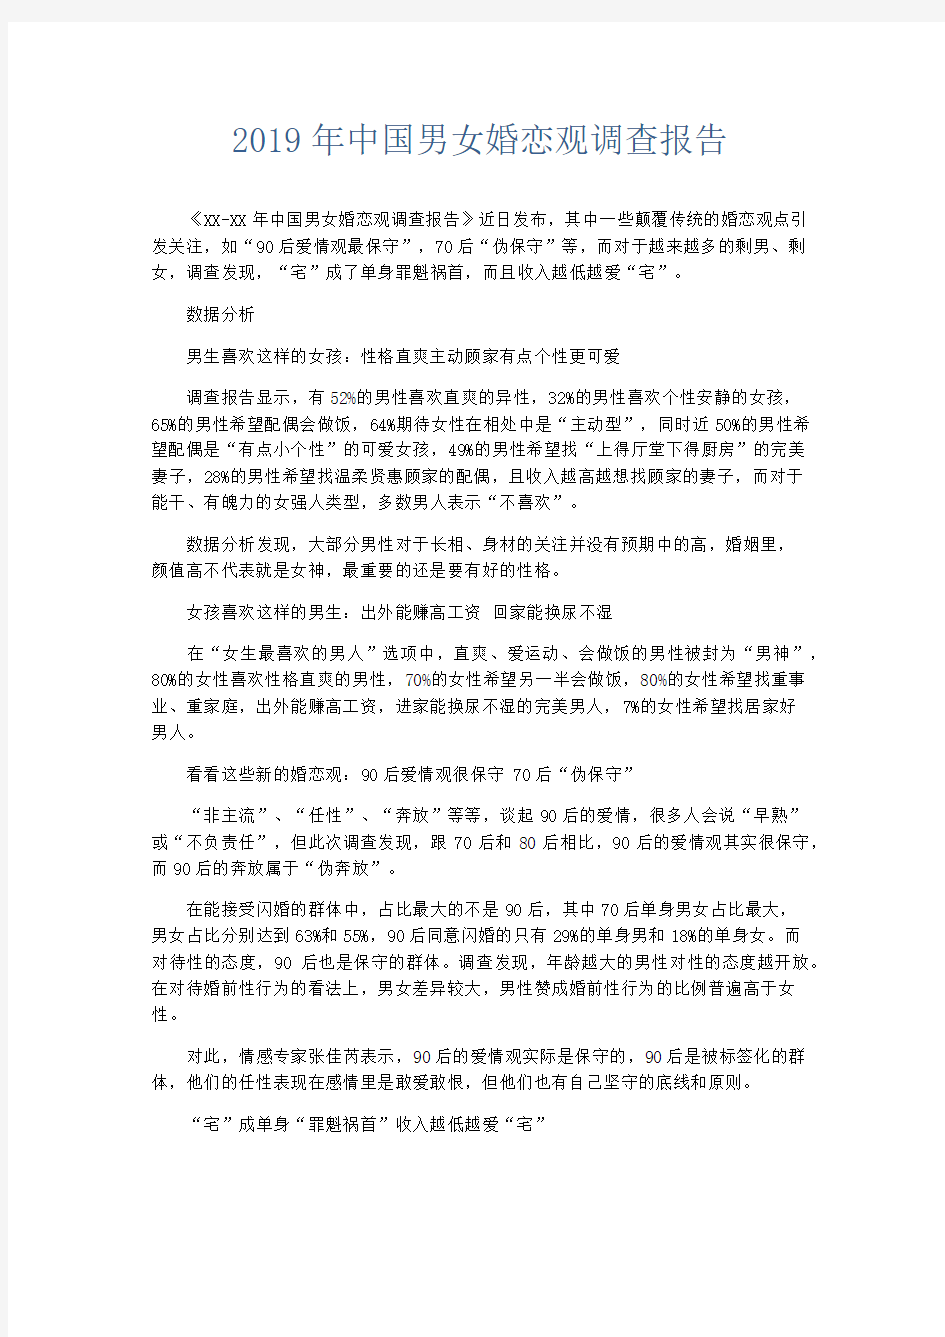 总结报告-2019年中国男女婚恋观调查报告 精品